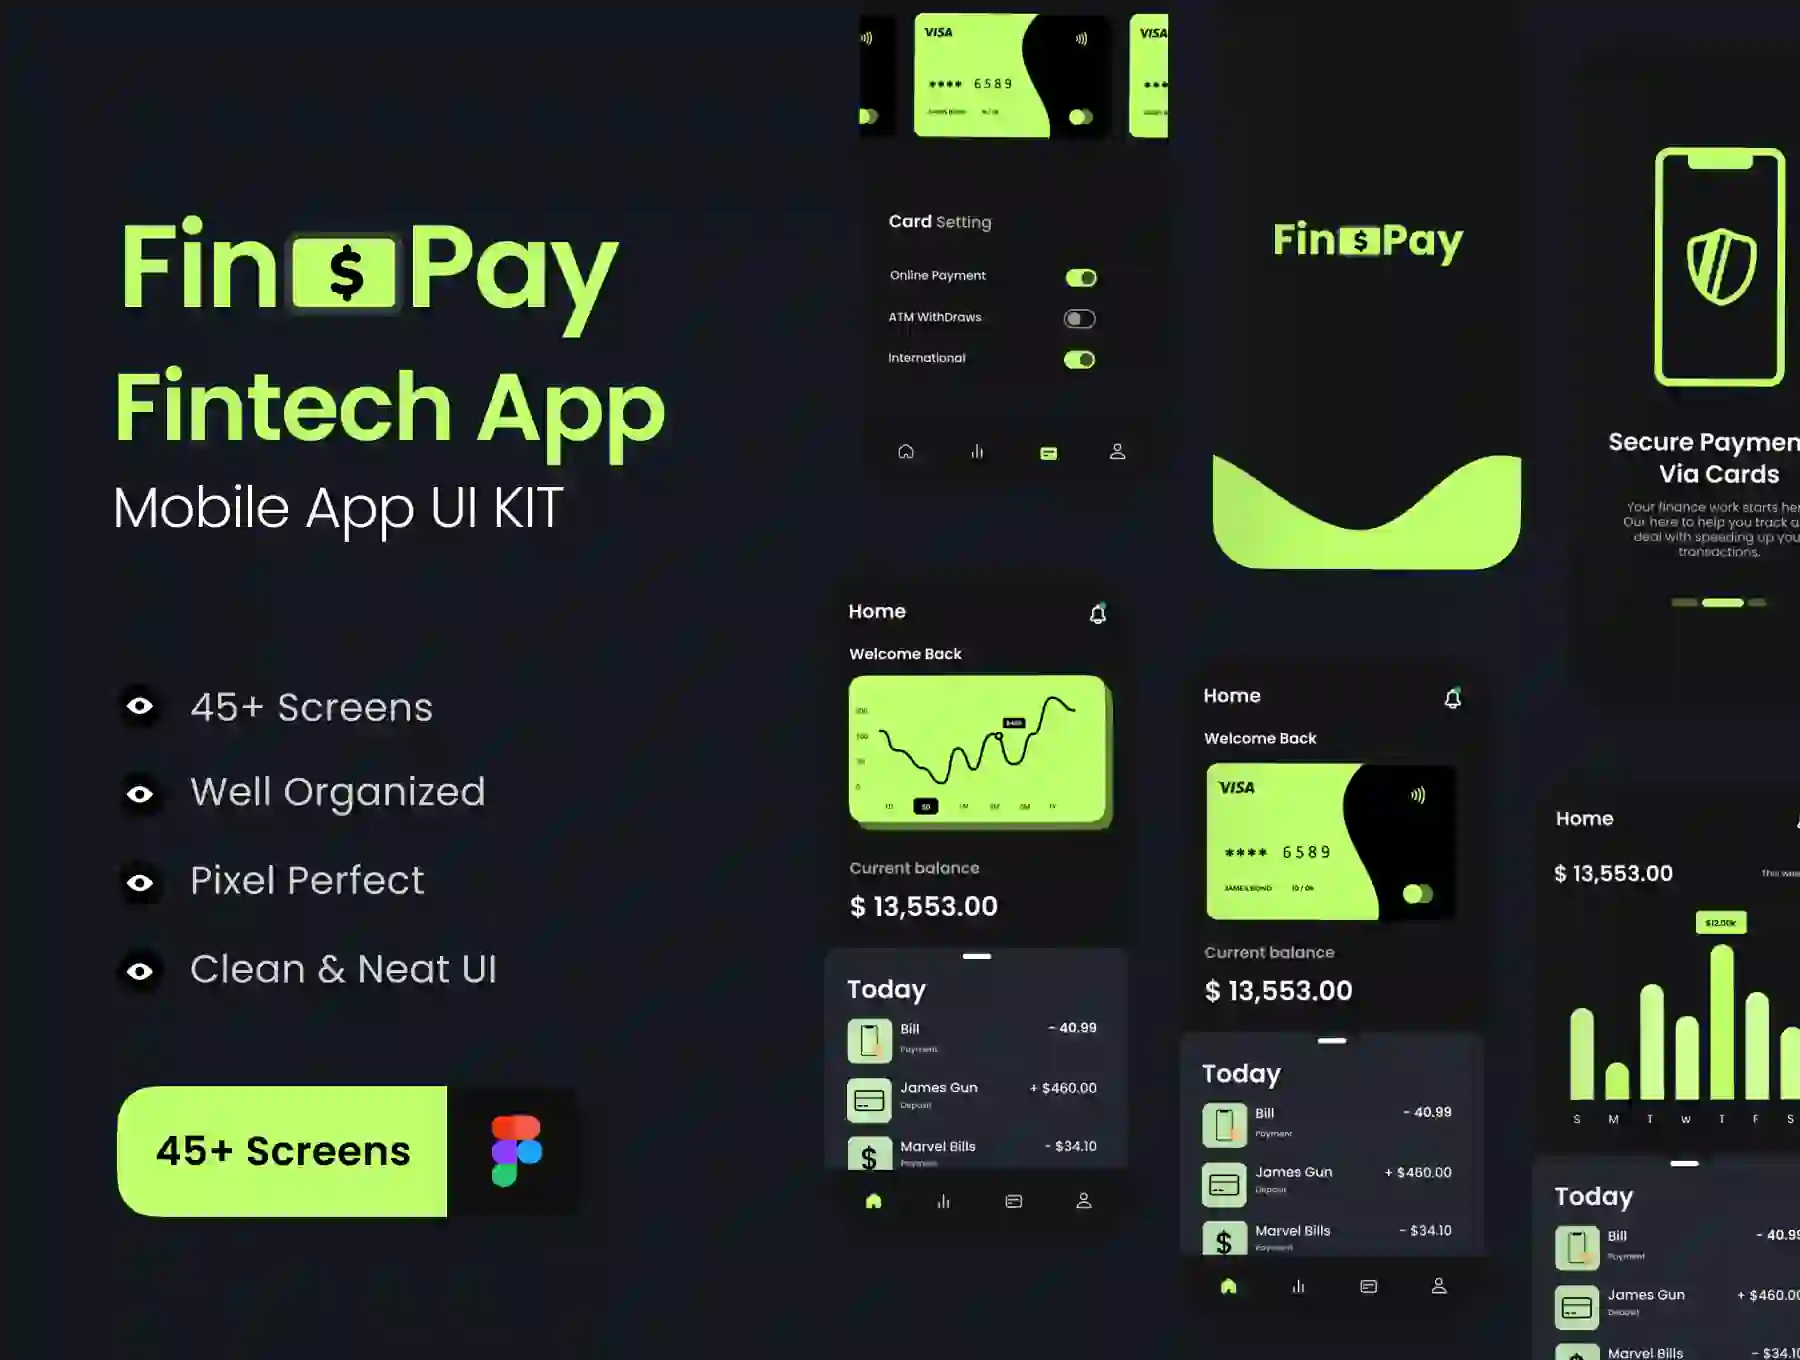 Finopay - Fintech Mobile App UI KIT